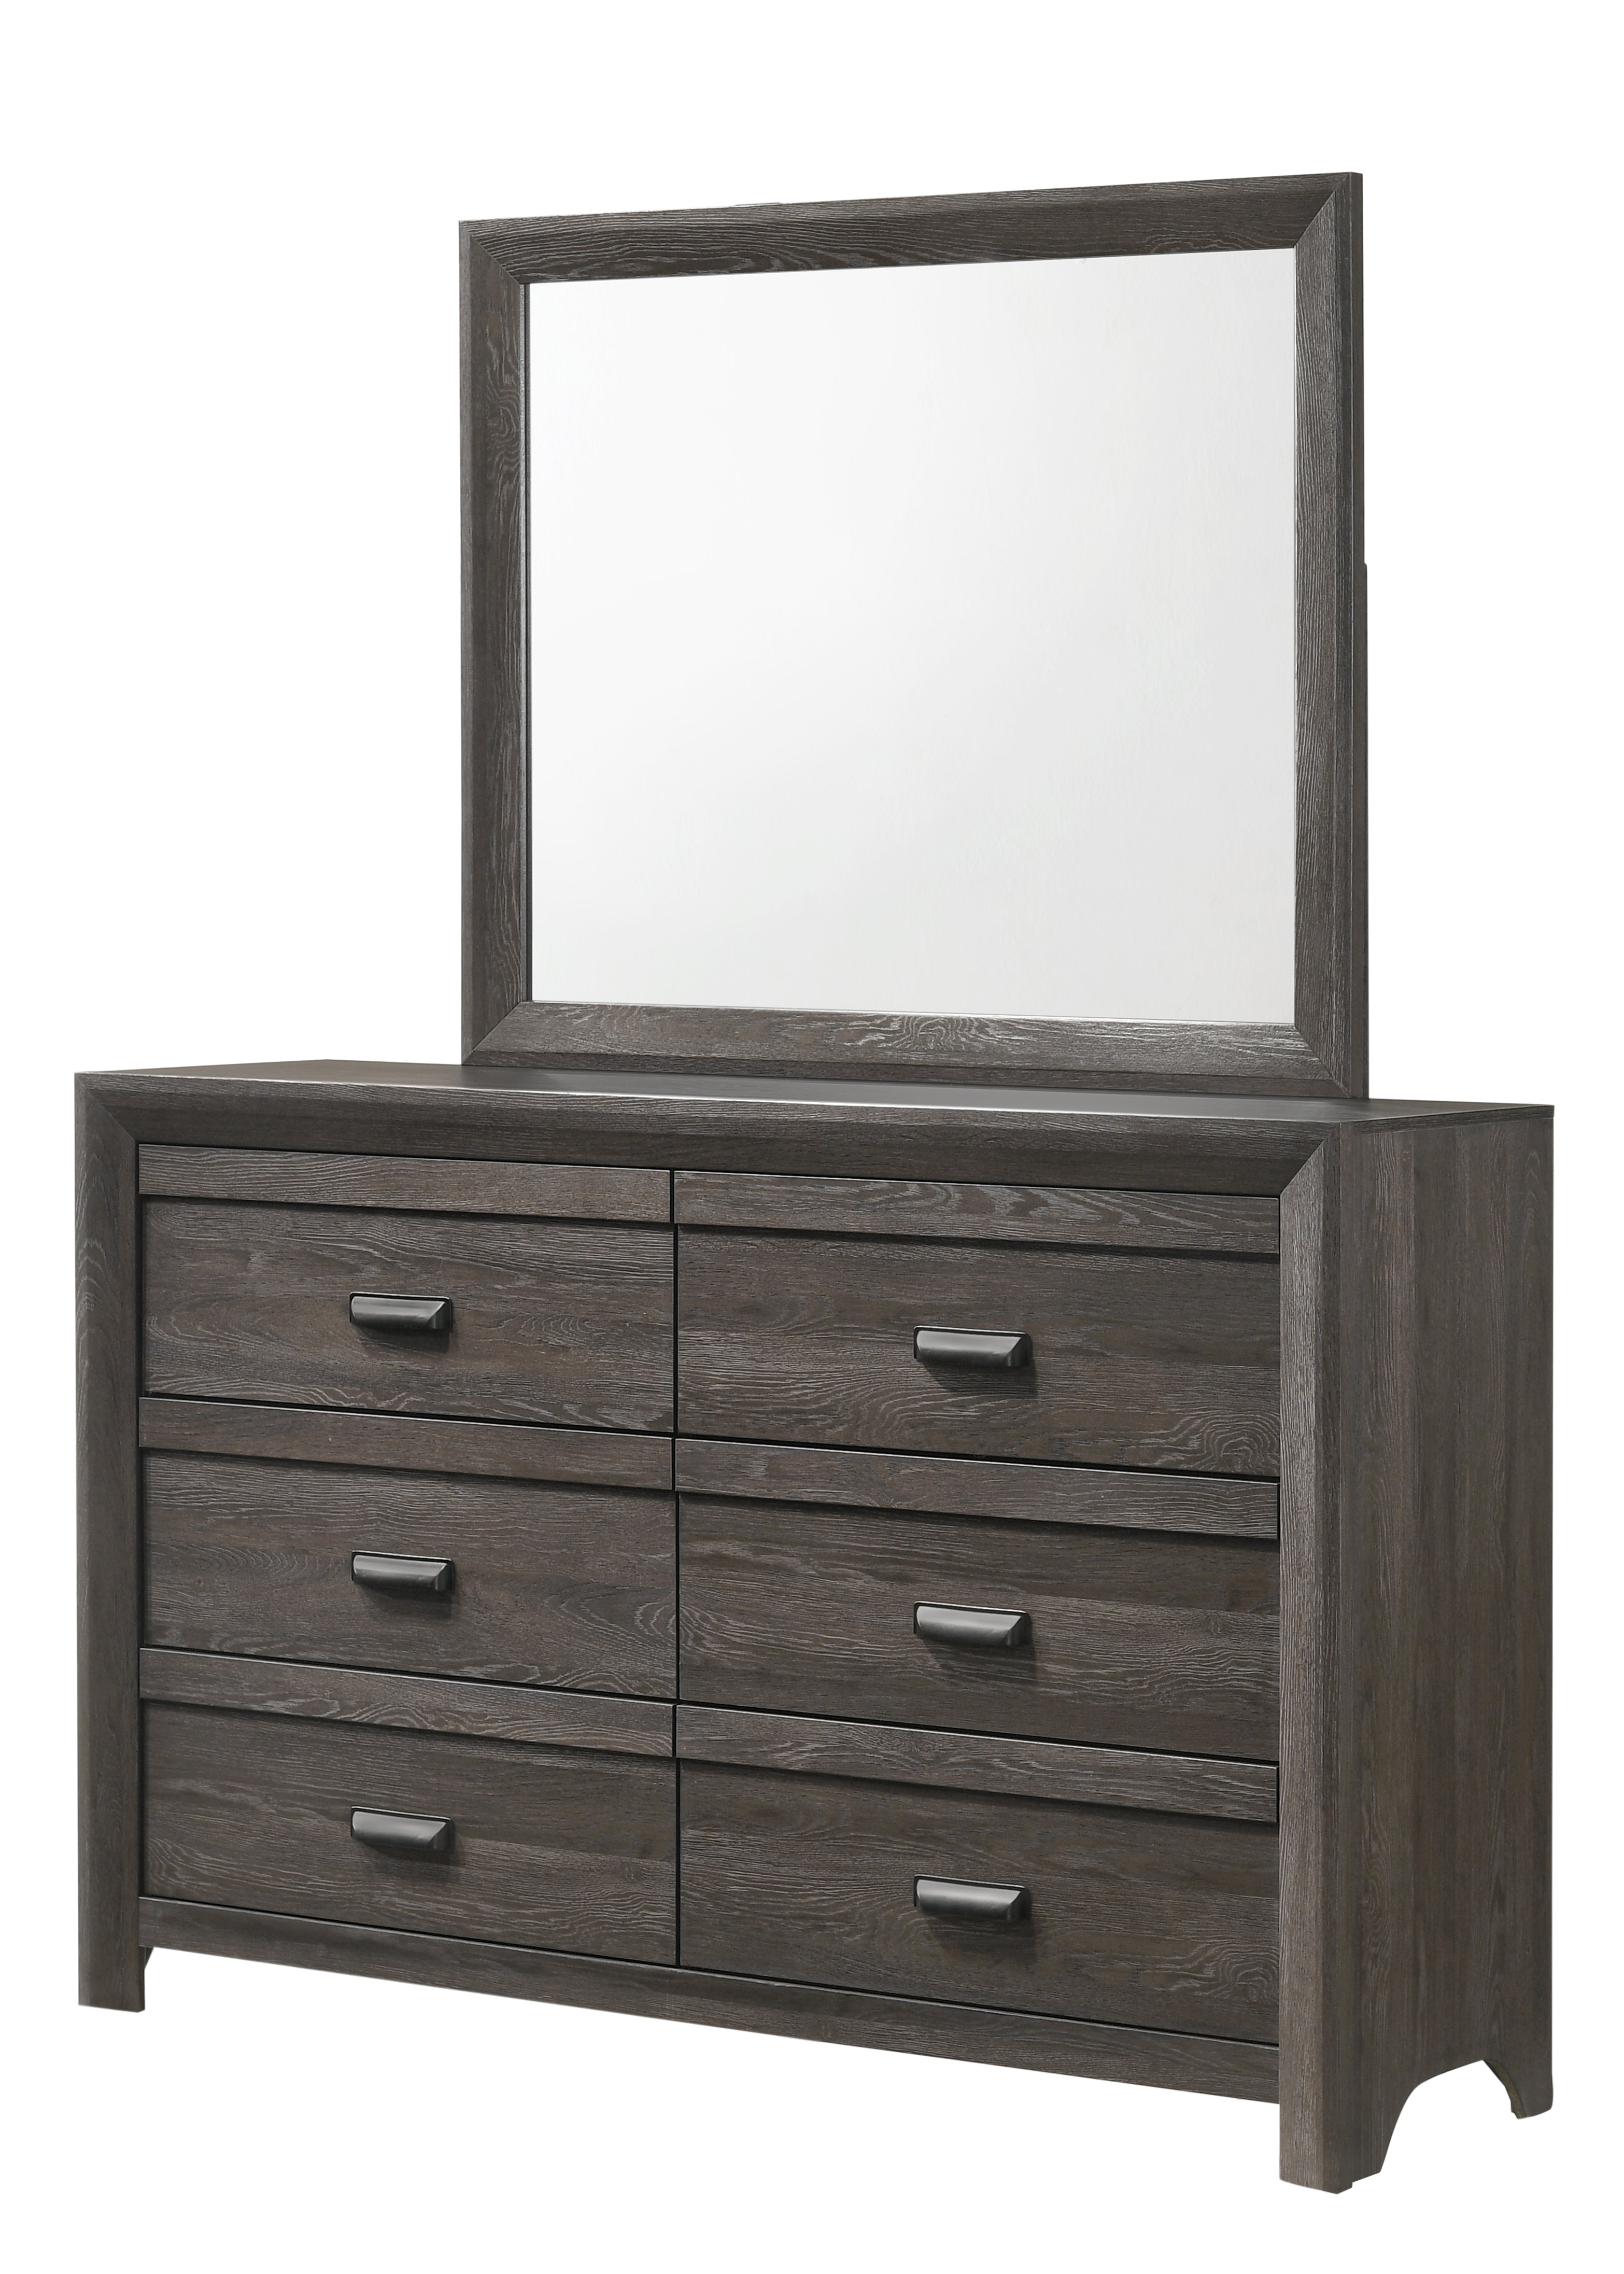 ADELAIDE - Queen Bed + Dresser + Mirror + Nightstand